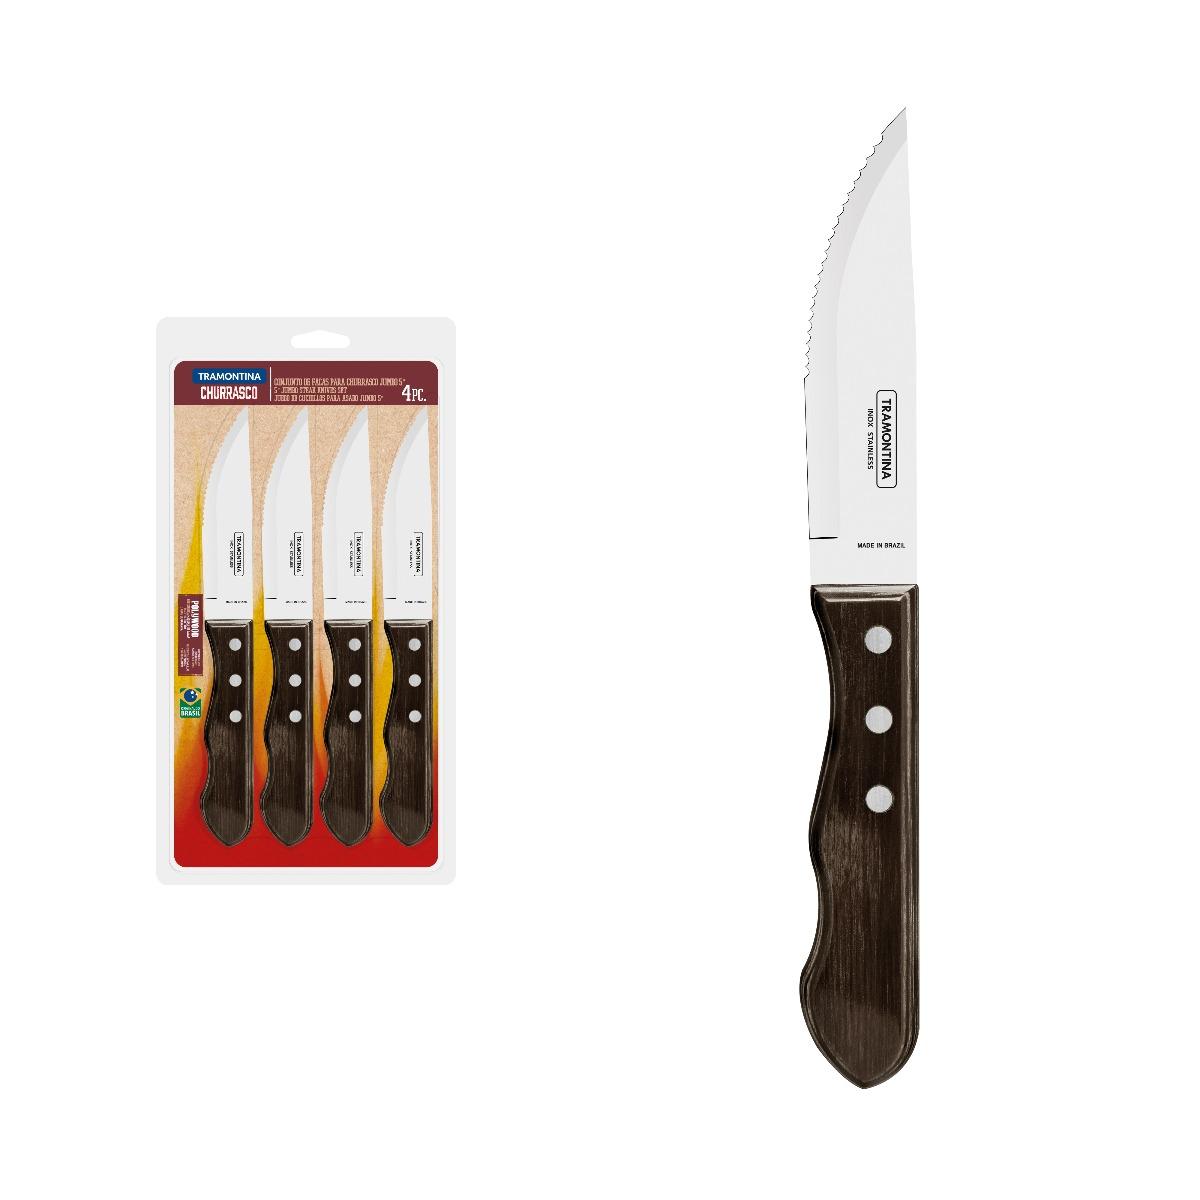 سكين مطبخ حزمة 4في1 ترامونتينا Tramontina Jumbo Knives Barbecue Set